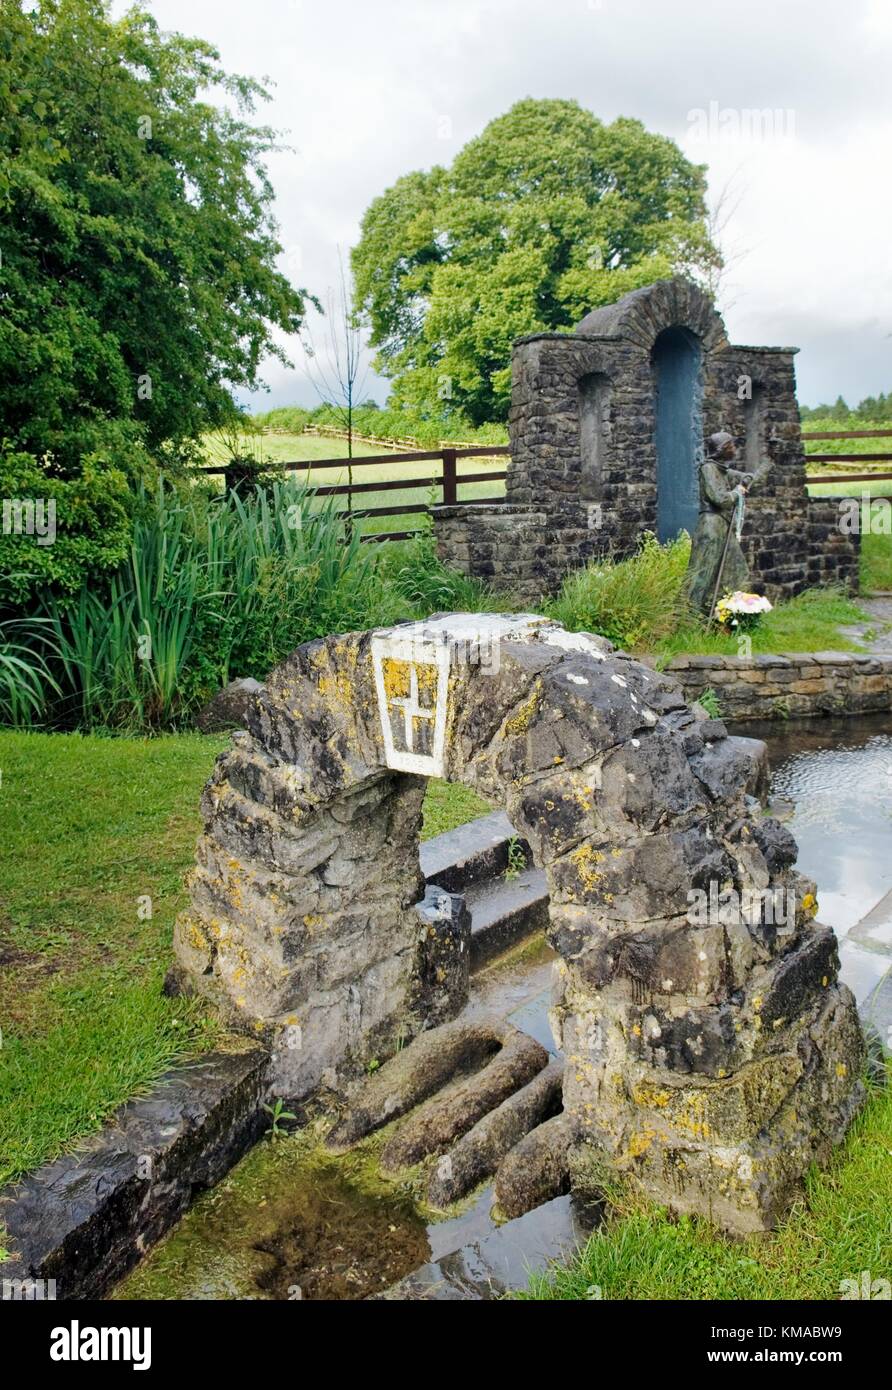 Saint Brigid's puits sacré, païenne et celtique médiévale précoce site chrétien près de la ville de Kildare, dans le comté de Kildare, Irlande. Banque D'Images